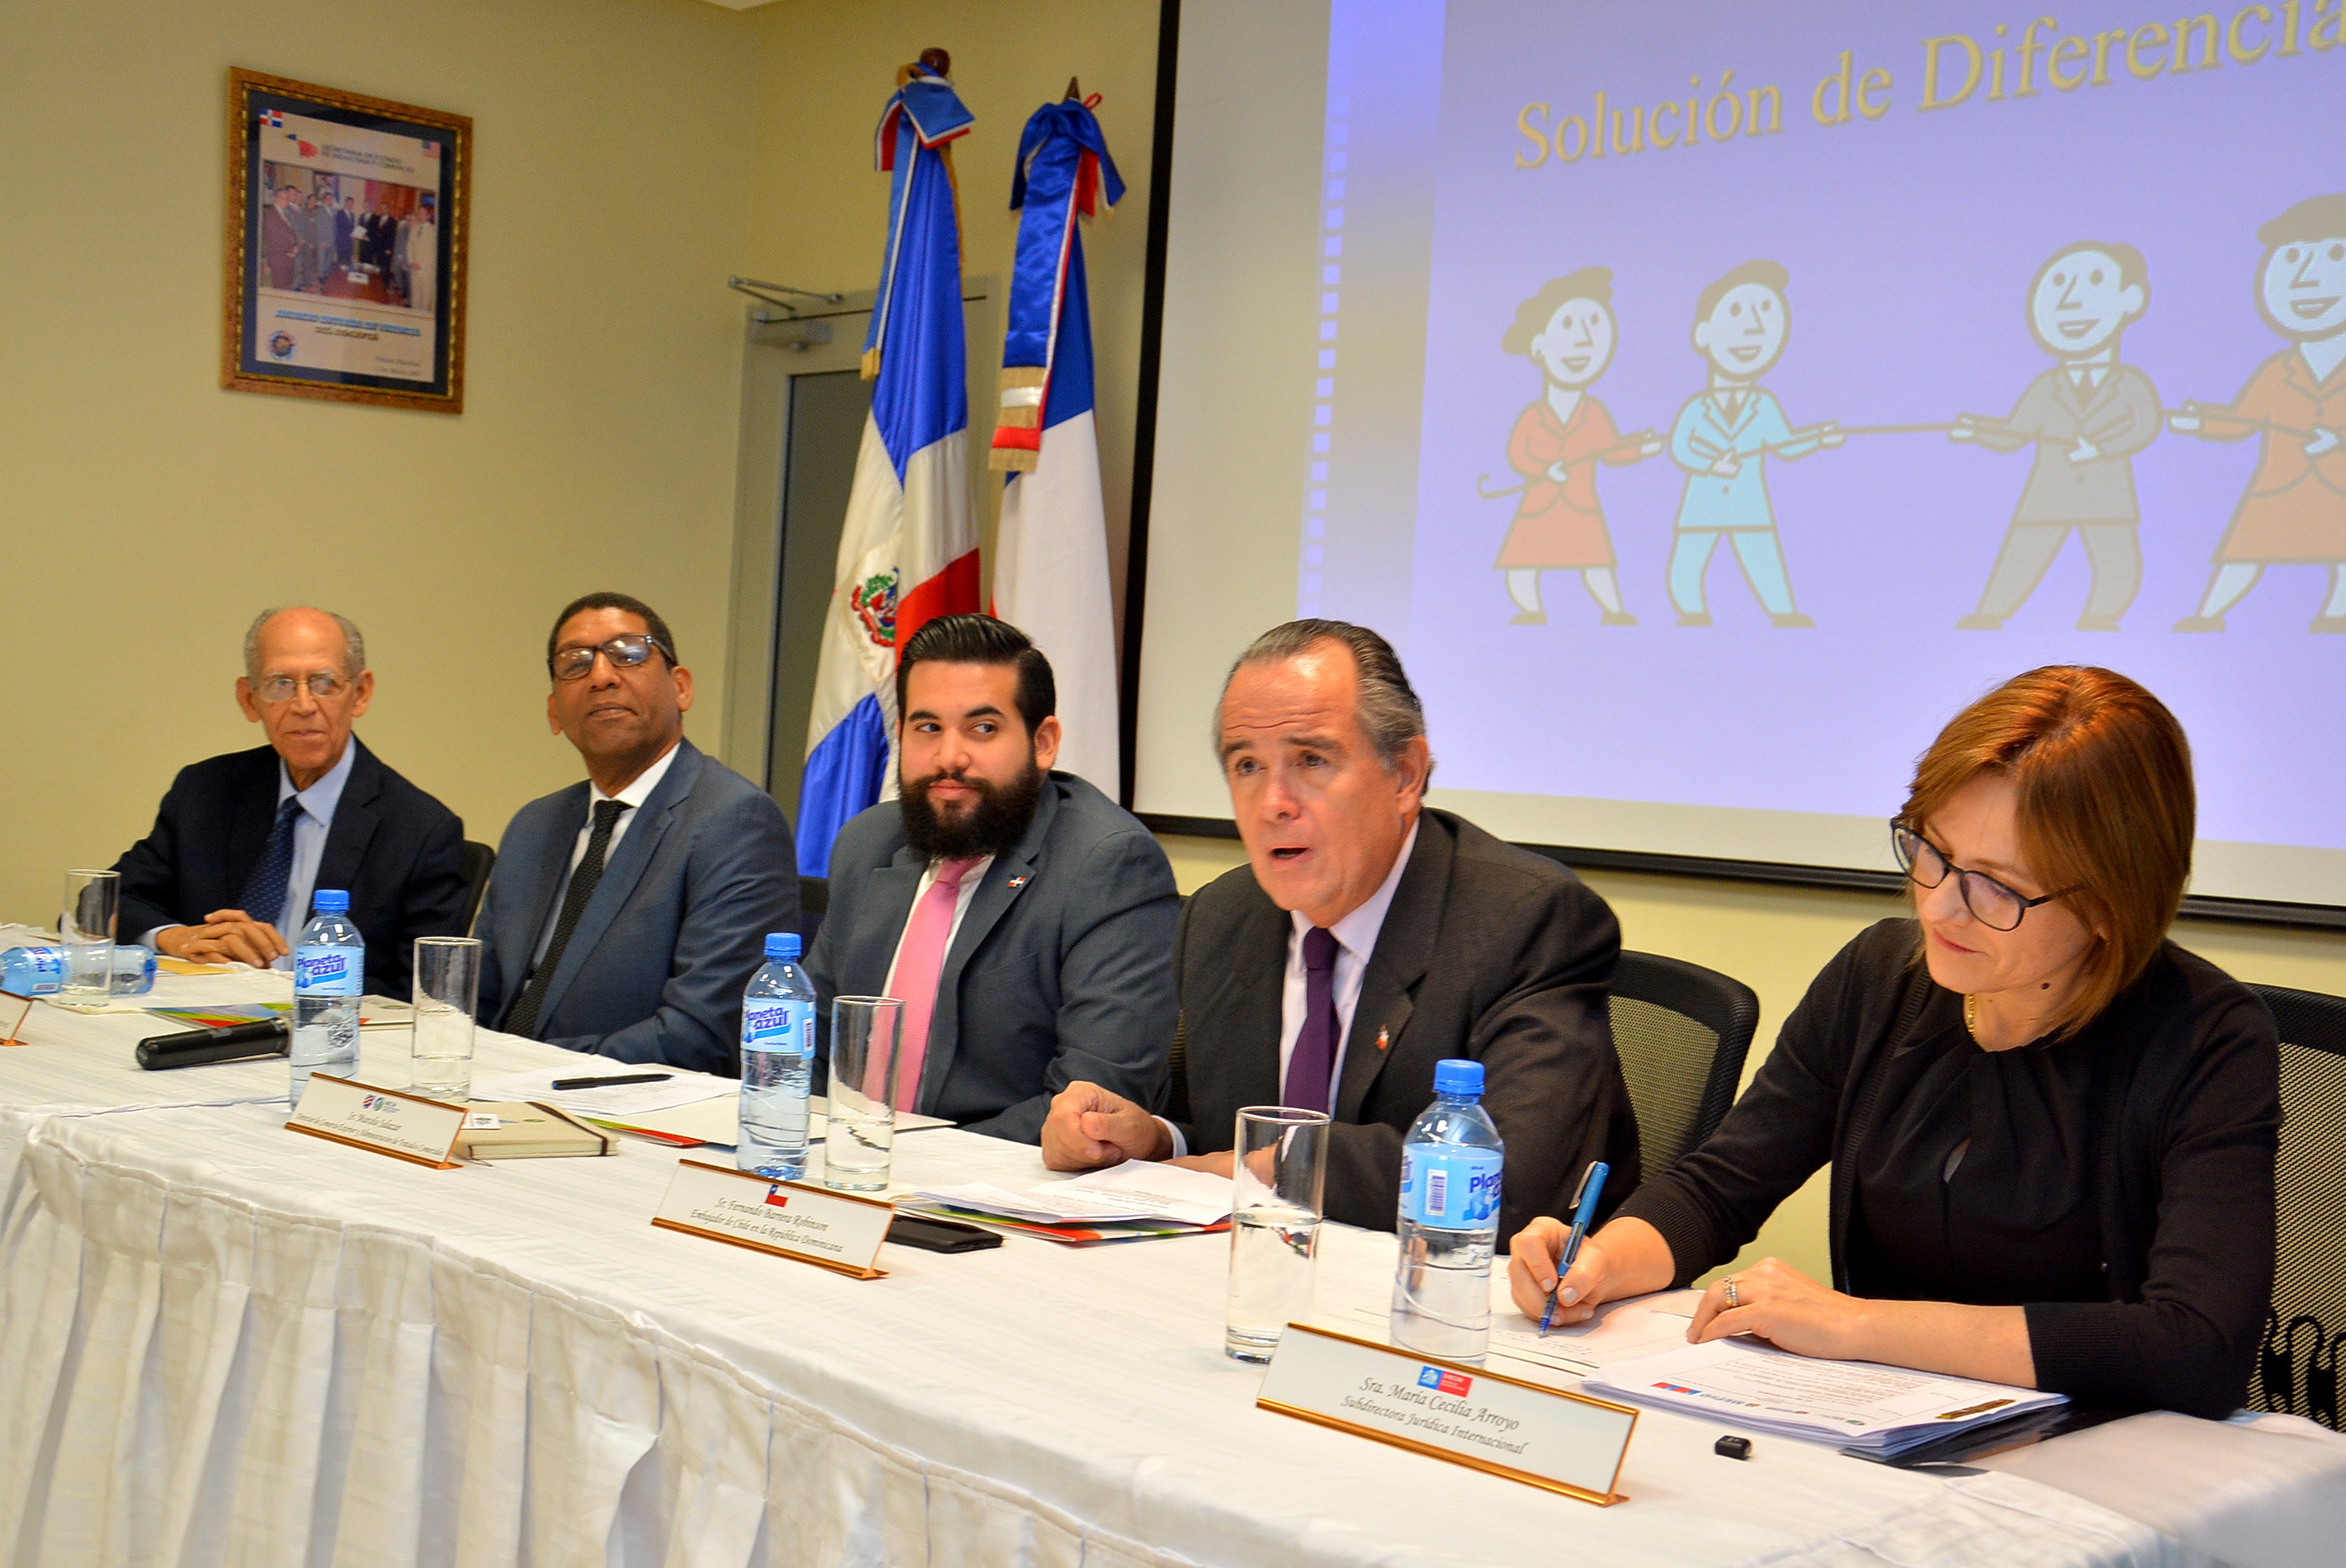  El MICM inicia seminario sobre comercio exterior, con apoyo del gobierno de Chile